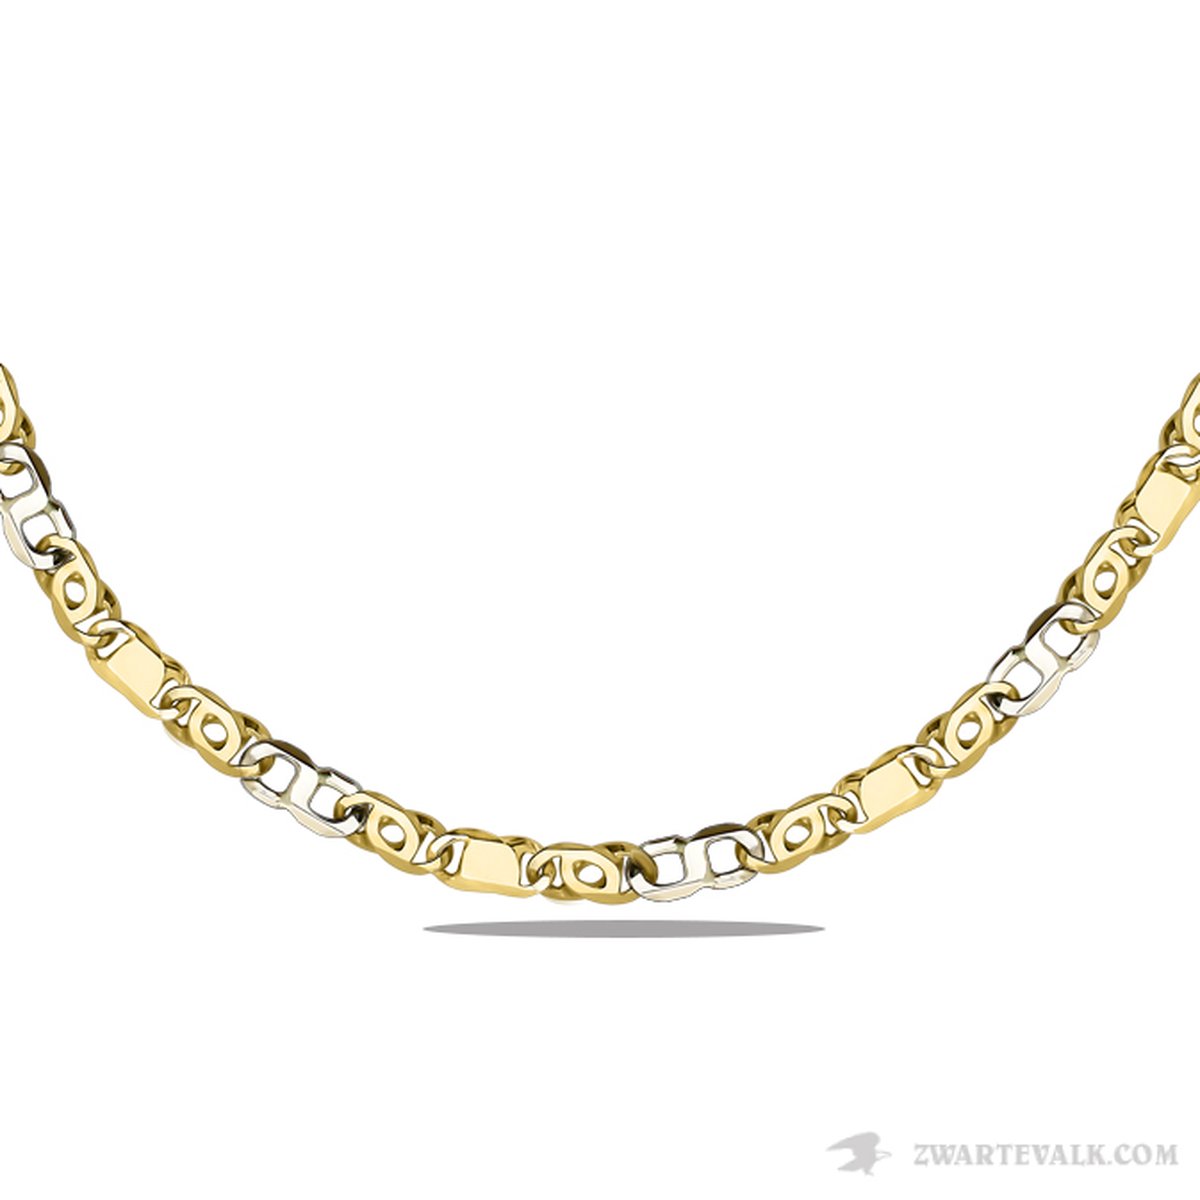 Juwelier Zwartevalk - 14 karaat bicolor gouden ketting met valkenoog schakel BF 1181/60cm